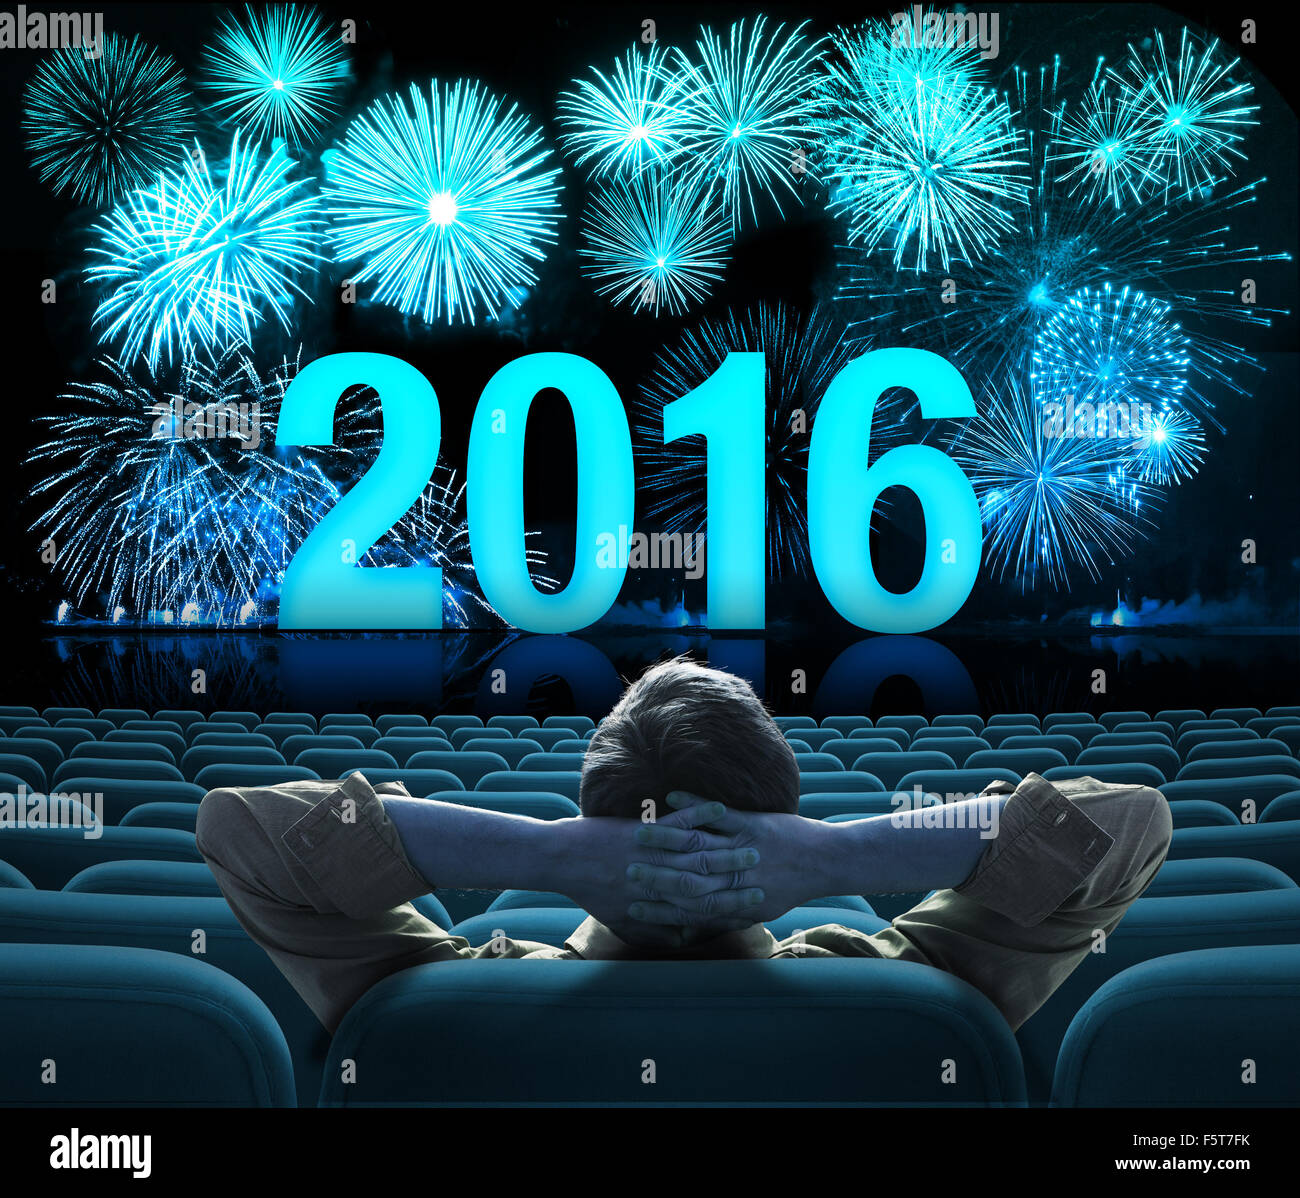 Año nuevo 2016 de fuegos artificiales en un cine con pantalla grande Foto de stock